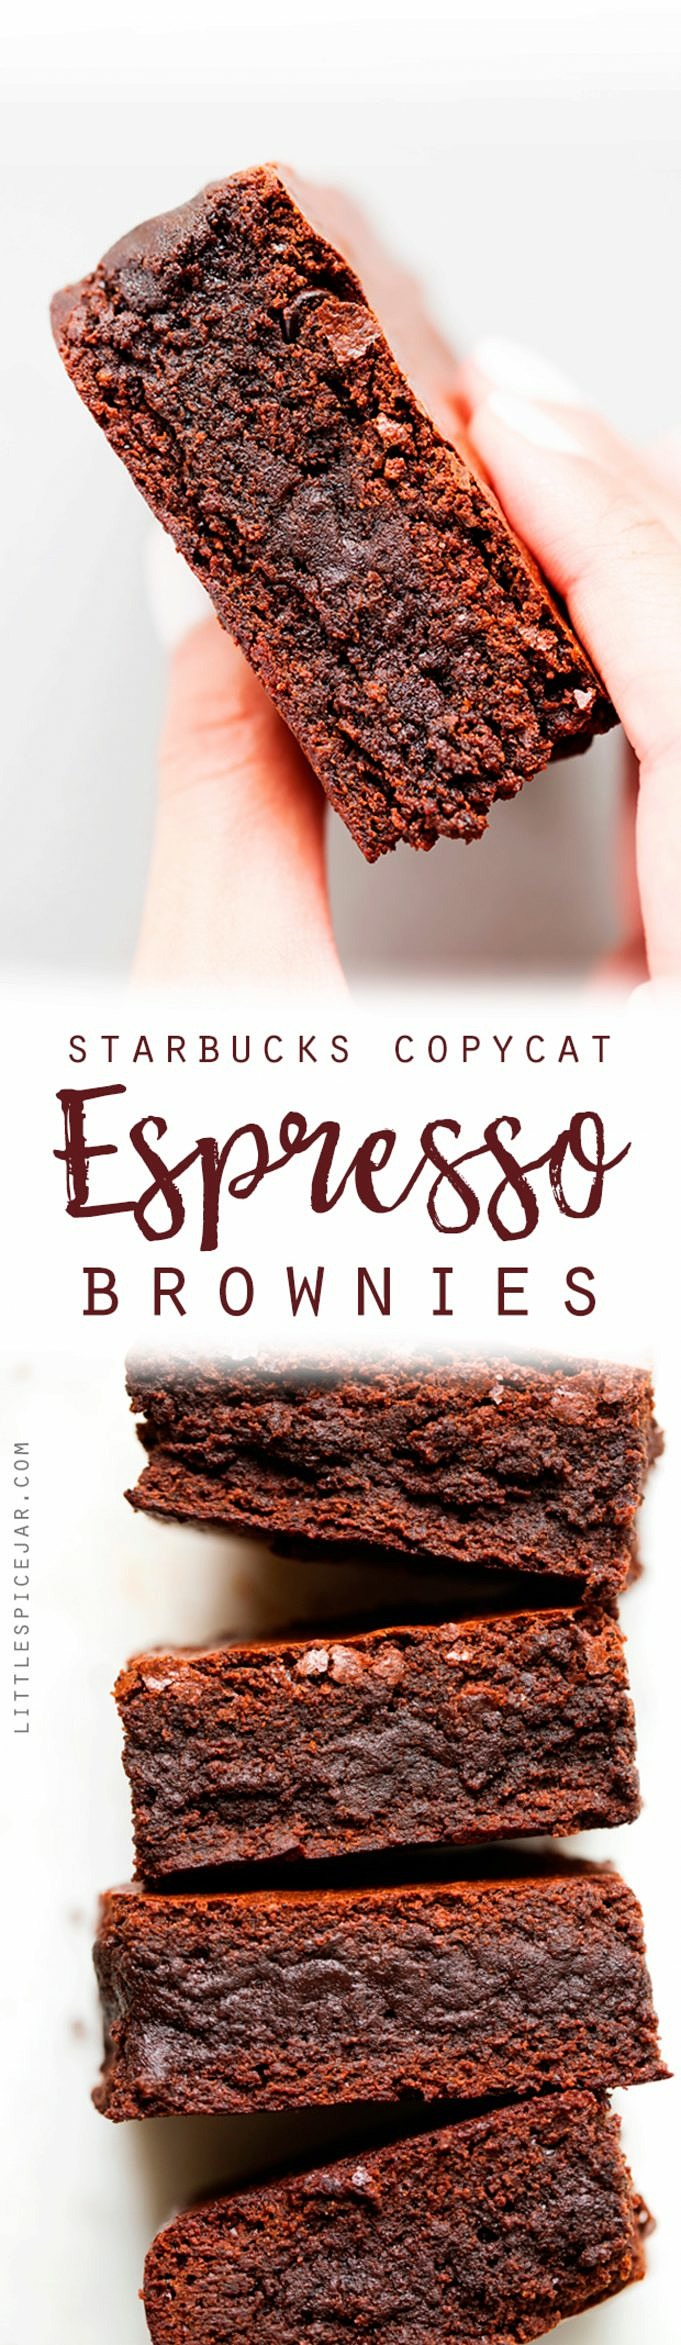 Cómo Hacer Brownie De Espresso. Aquí Hay Una Receta Rápida